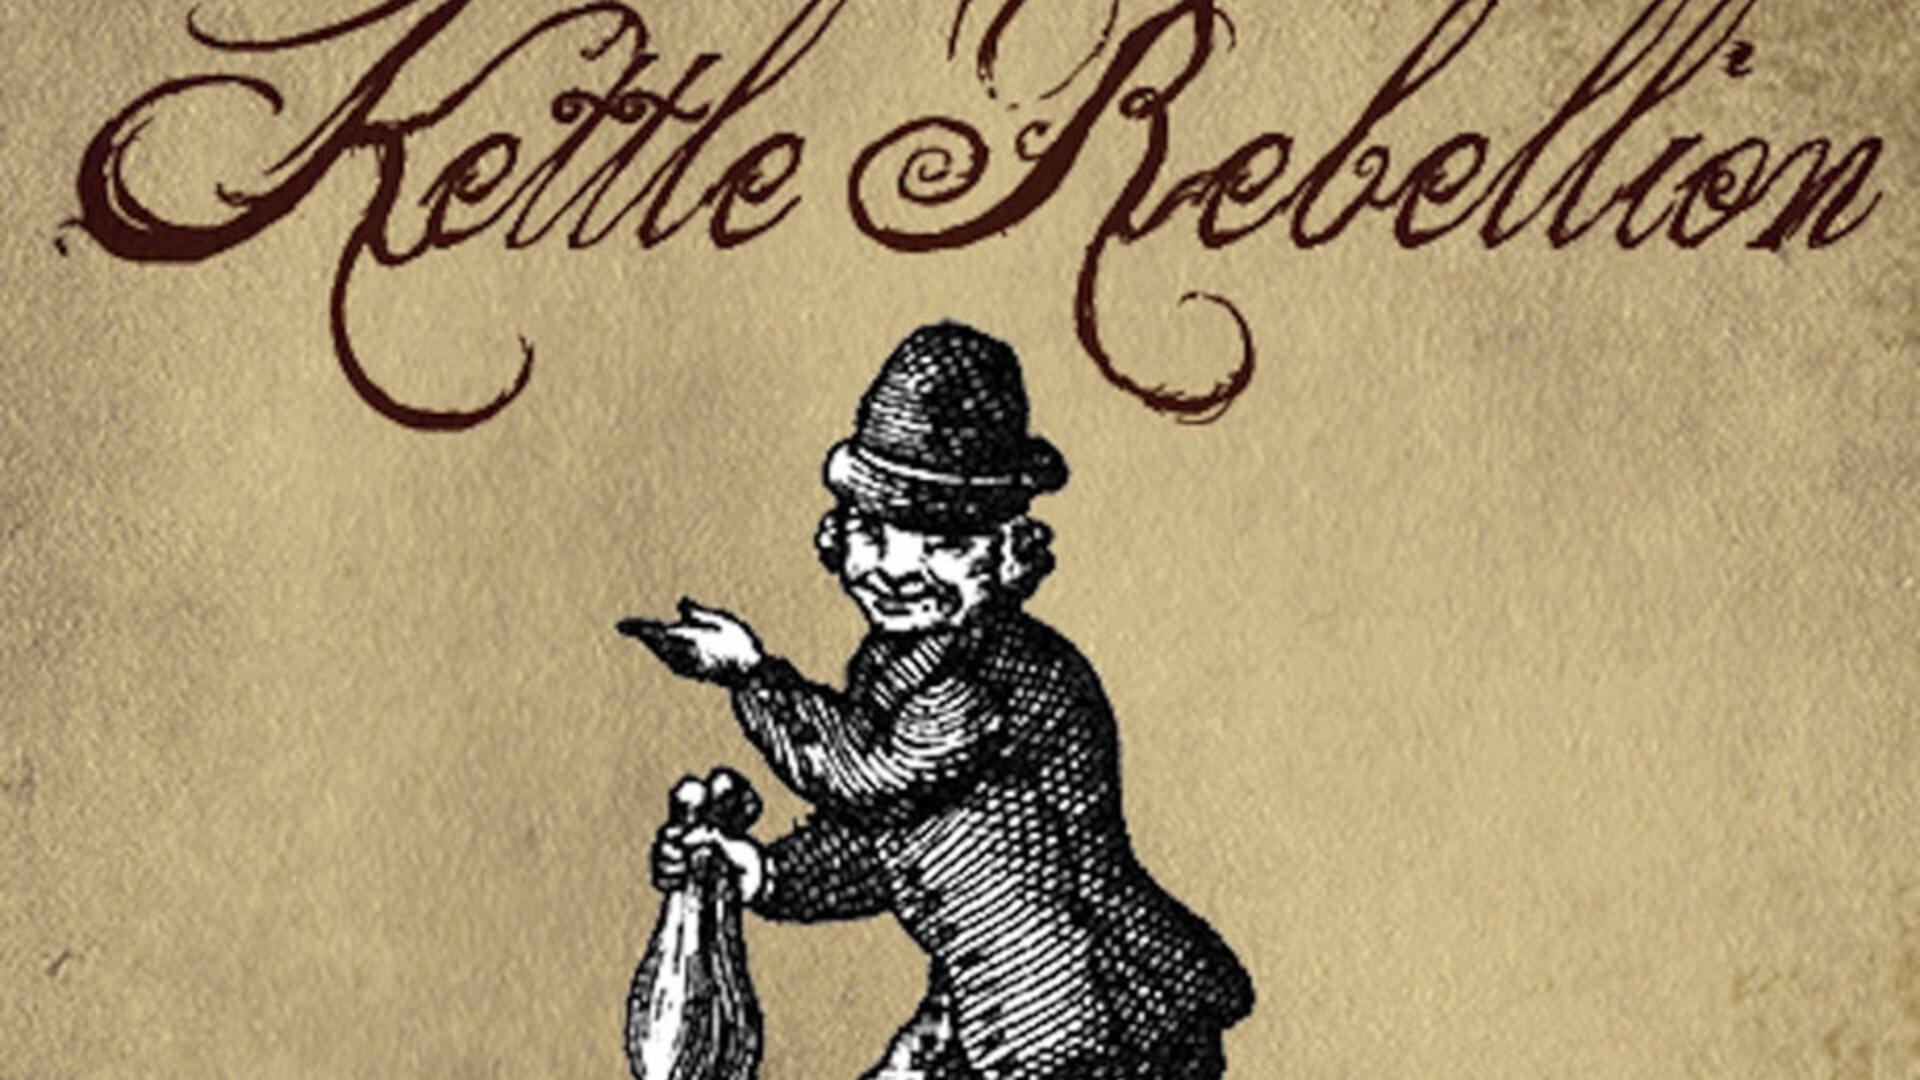 Kettle Rebellion